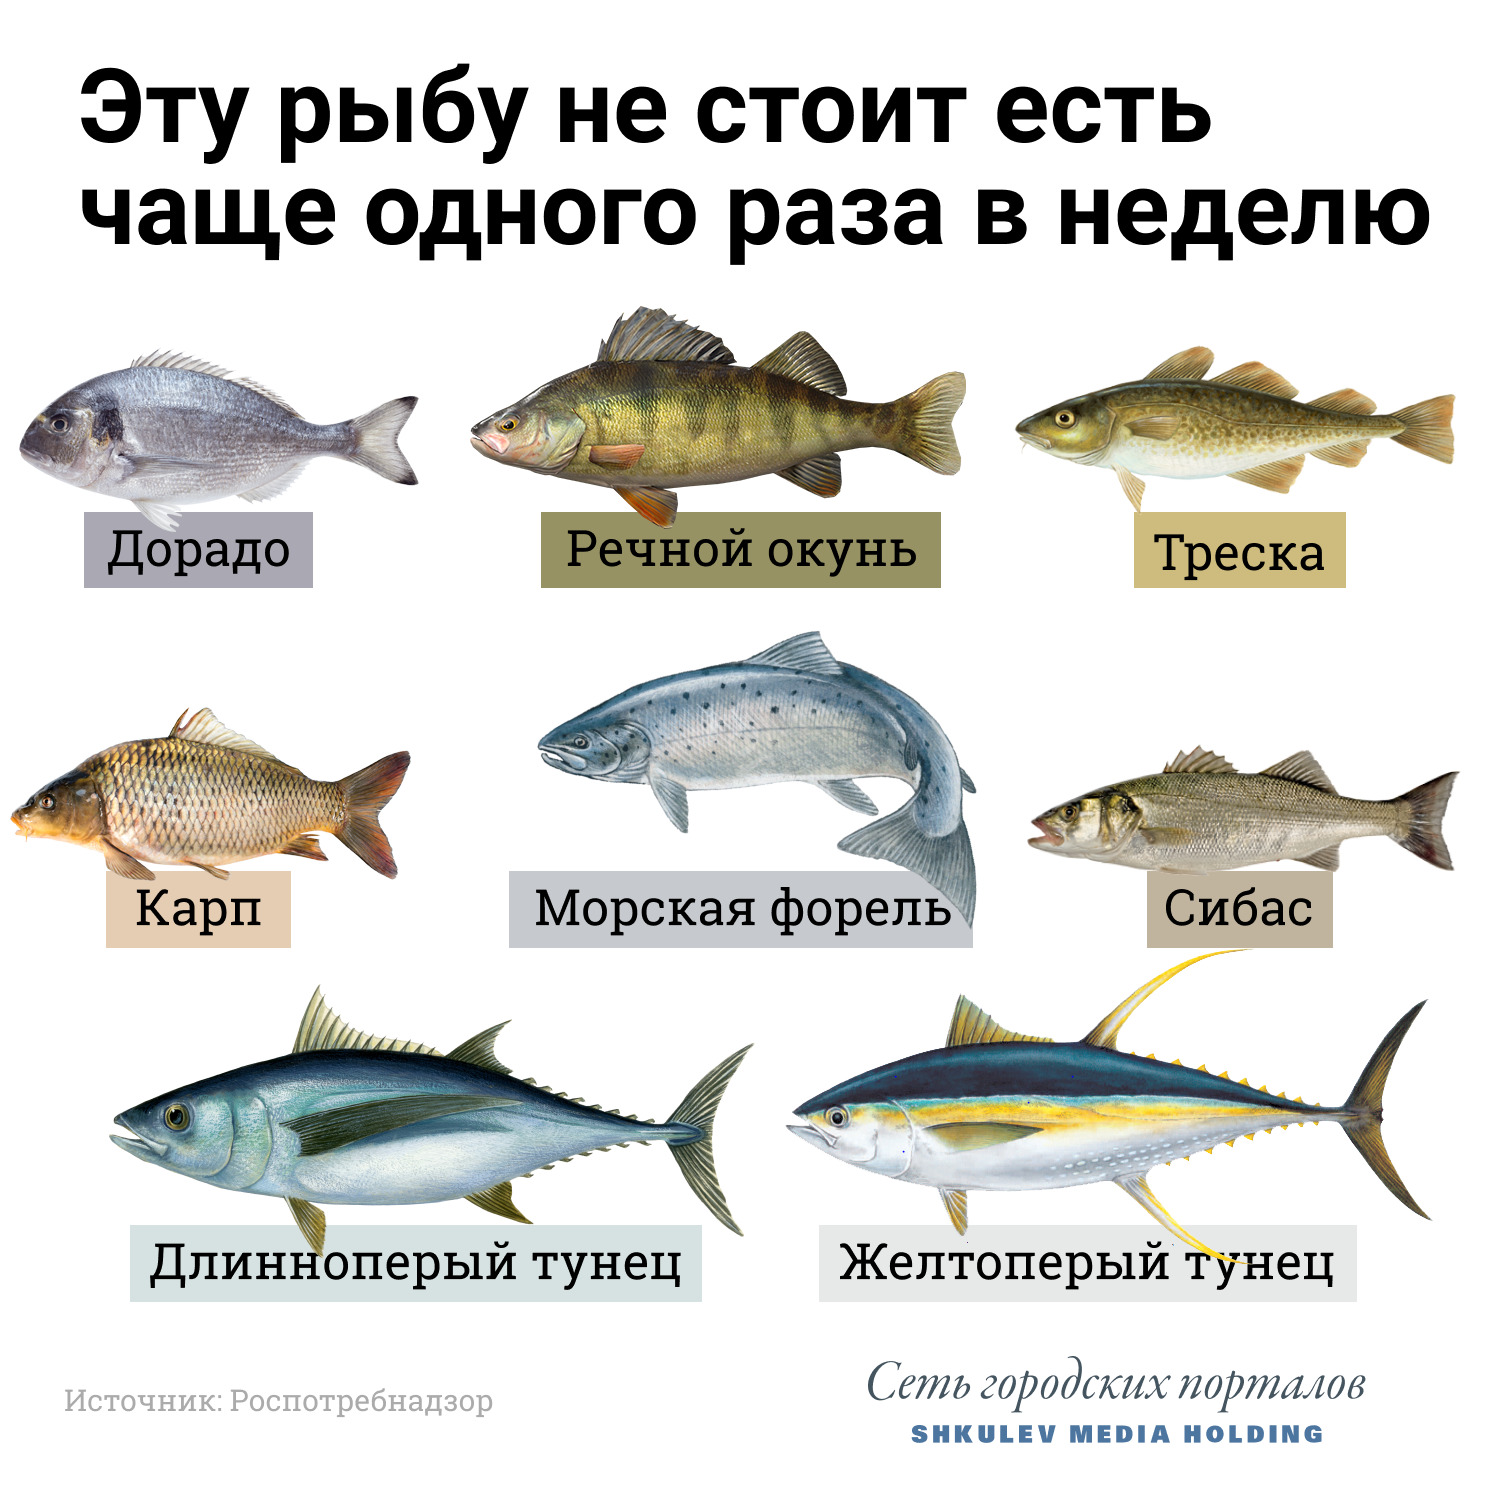 Полезные советы по выбору и хранению рыбы